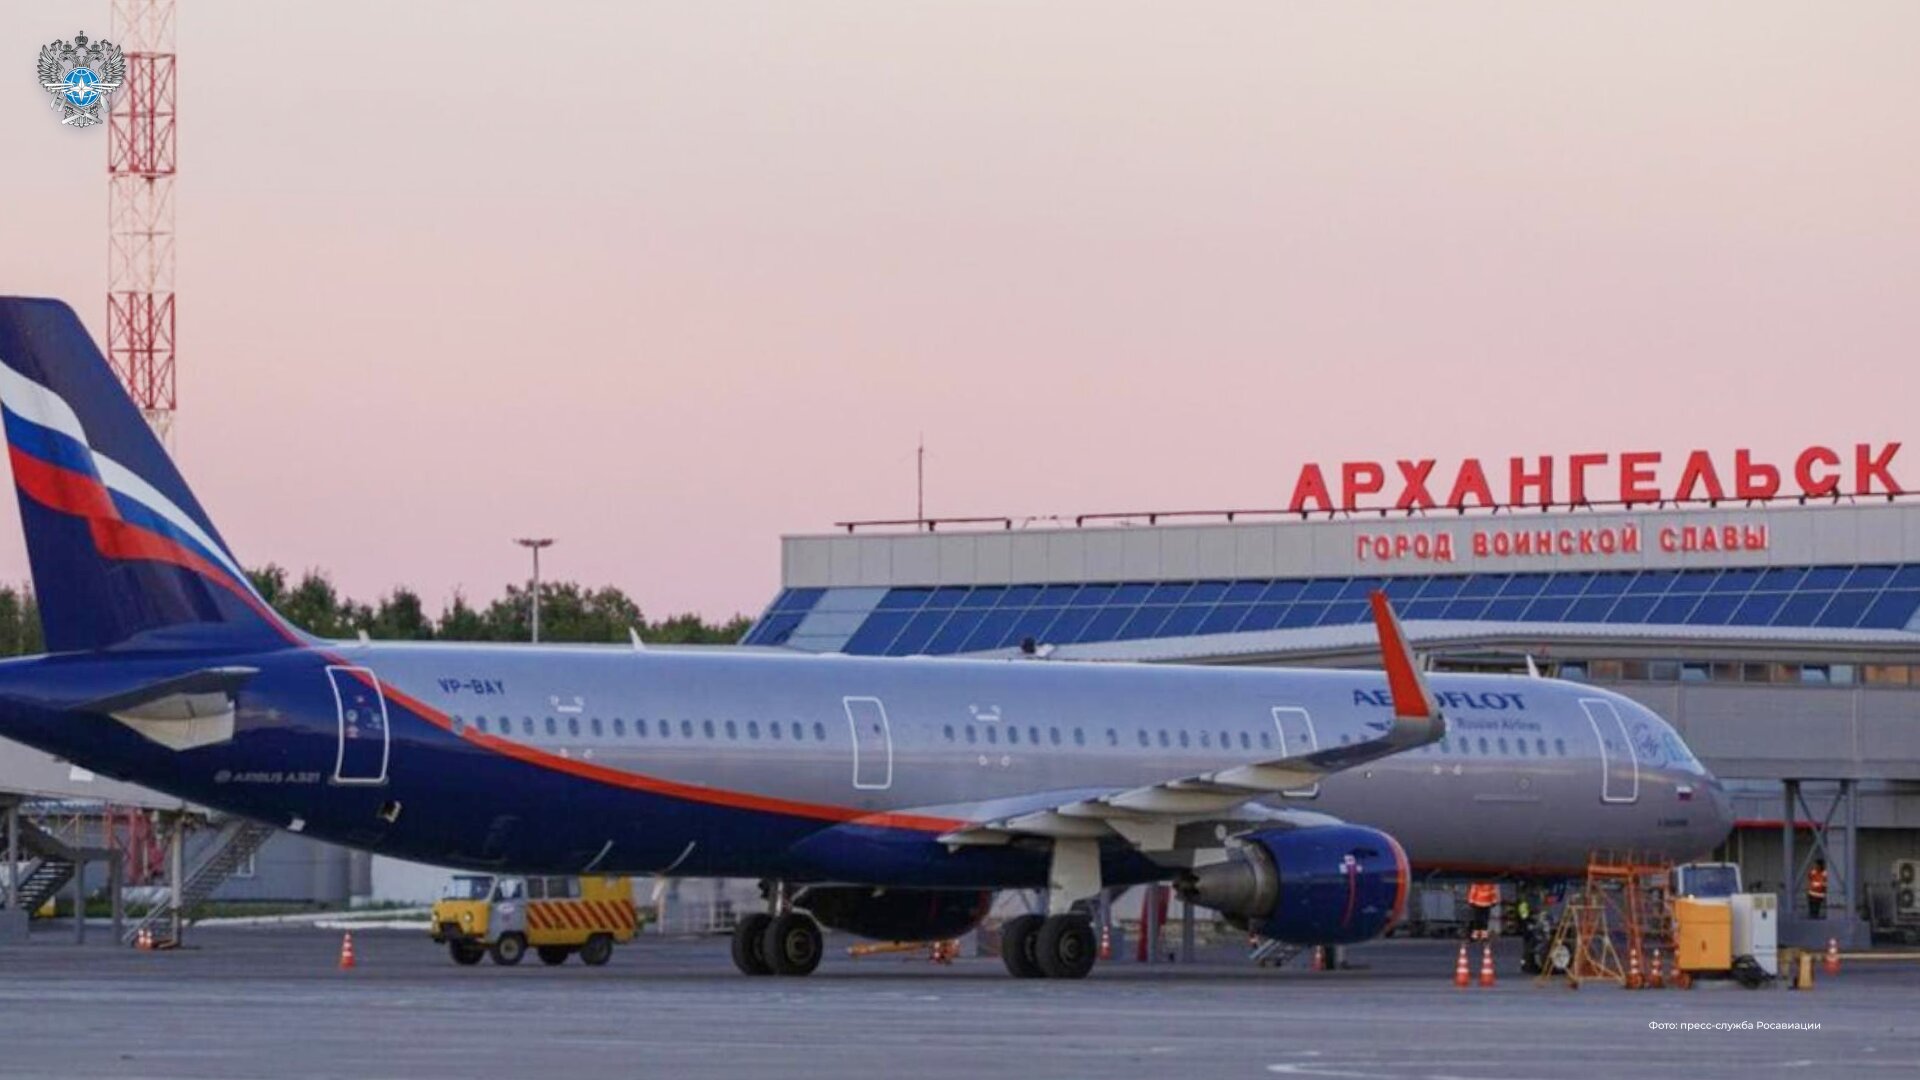 После реконструкции взлетно-посадочной полосы аэропорт Архангельска расширяет маршрутную сеть